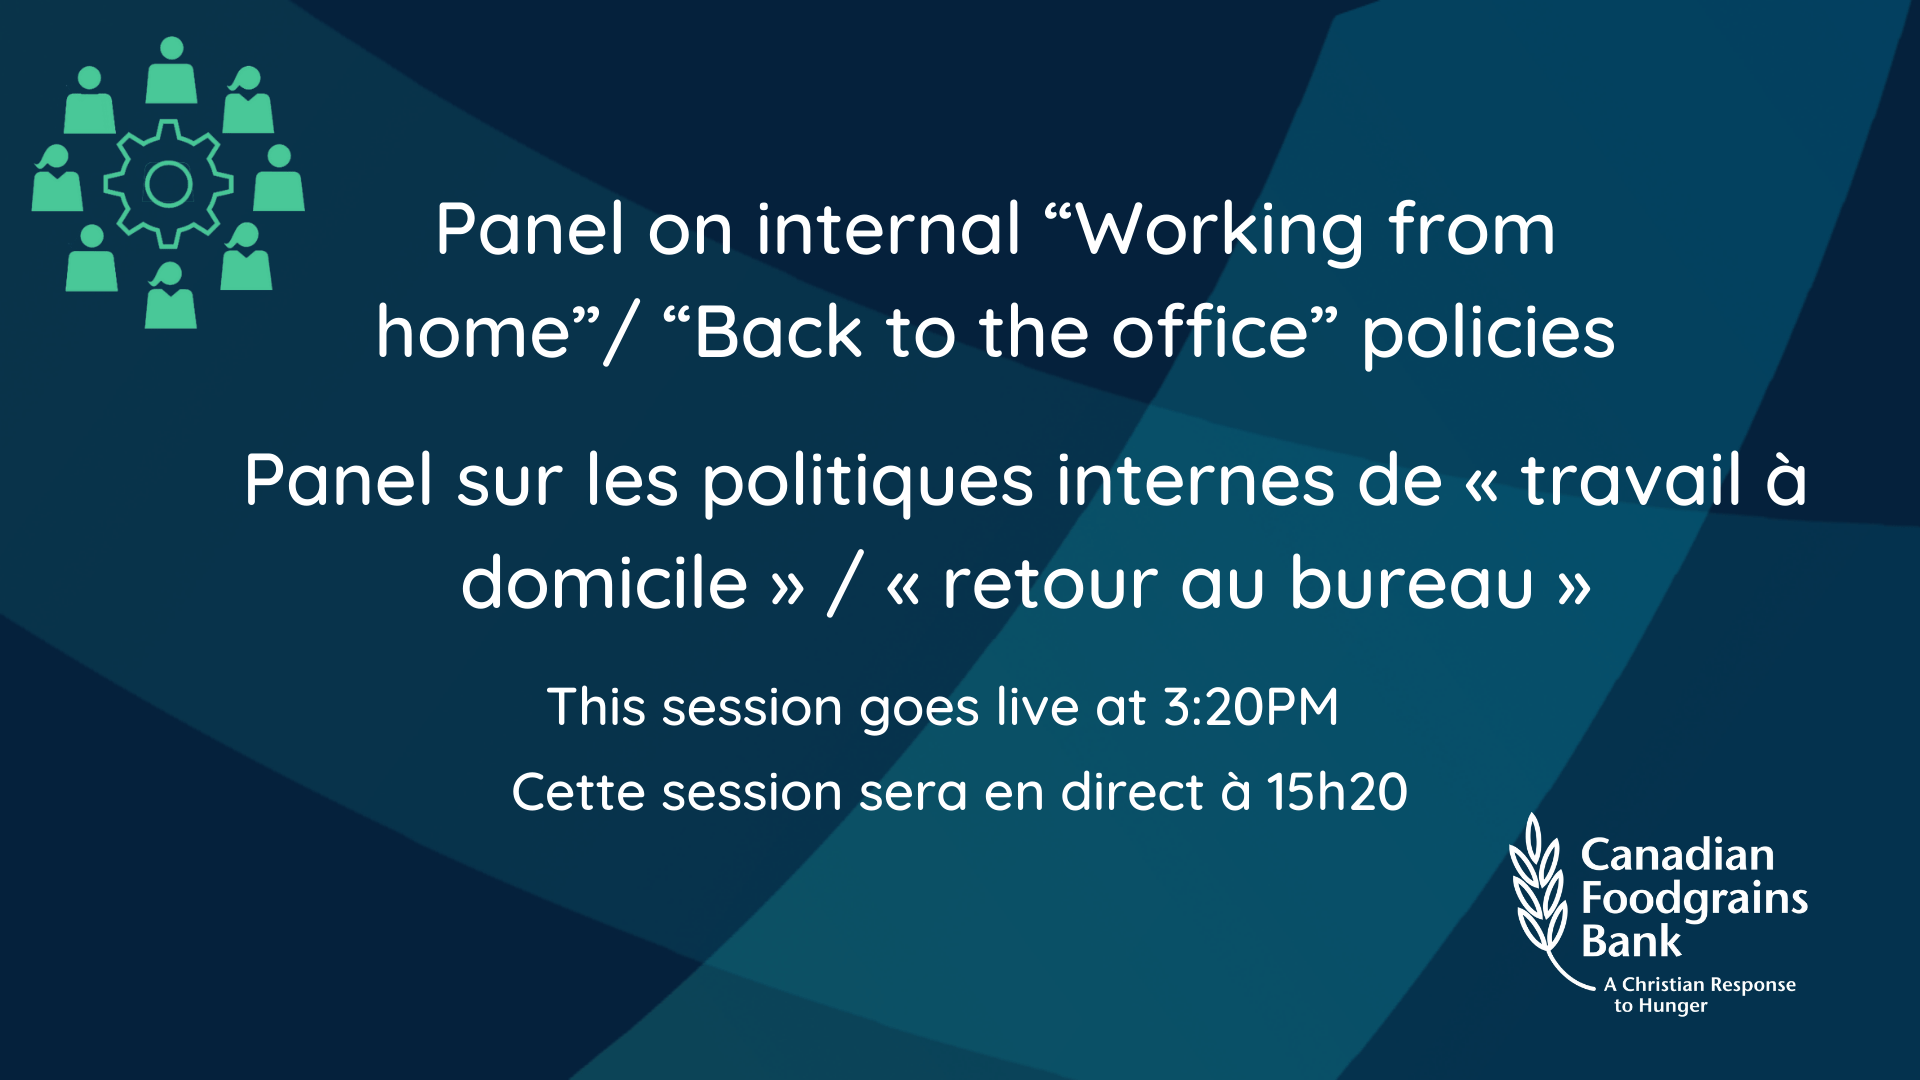 Panel sur les politiques internes de "travail à domicile" / "retour au bureau".